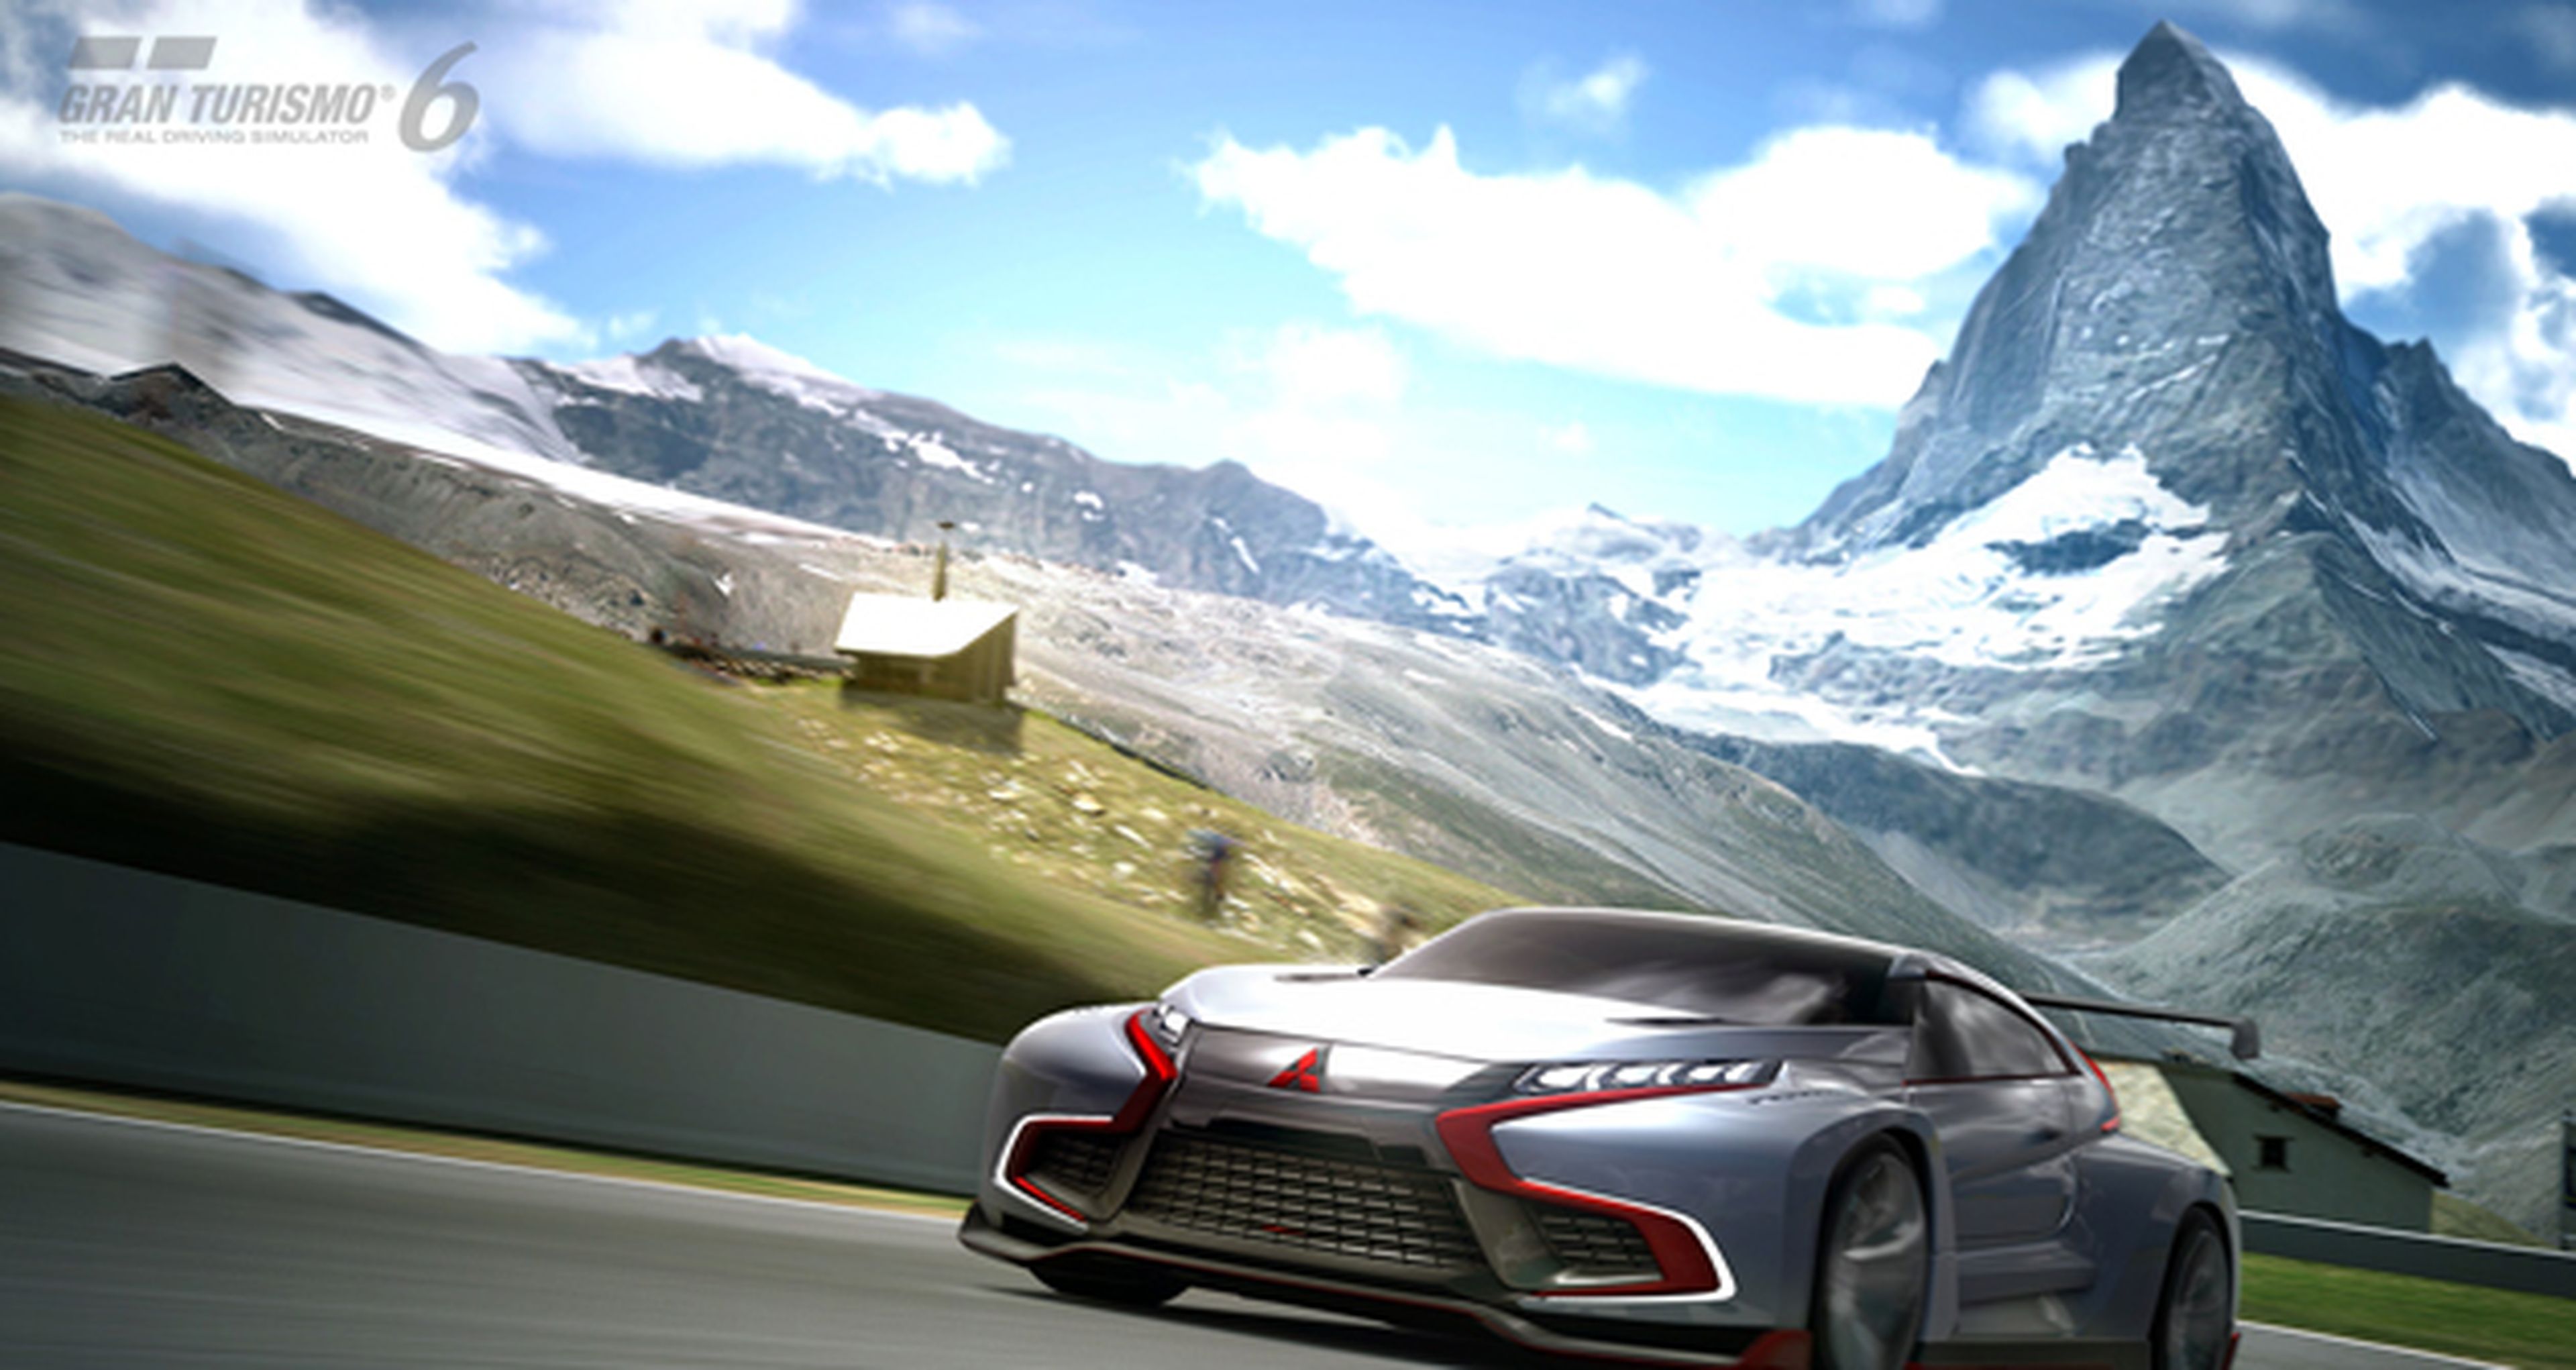 Gran Turismo 6 recibe nuevos contenidos en su próxima actualización